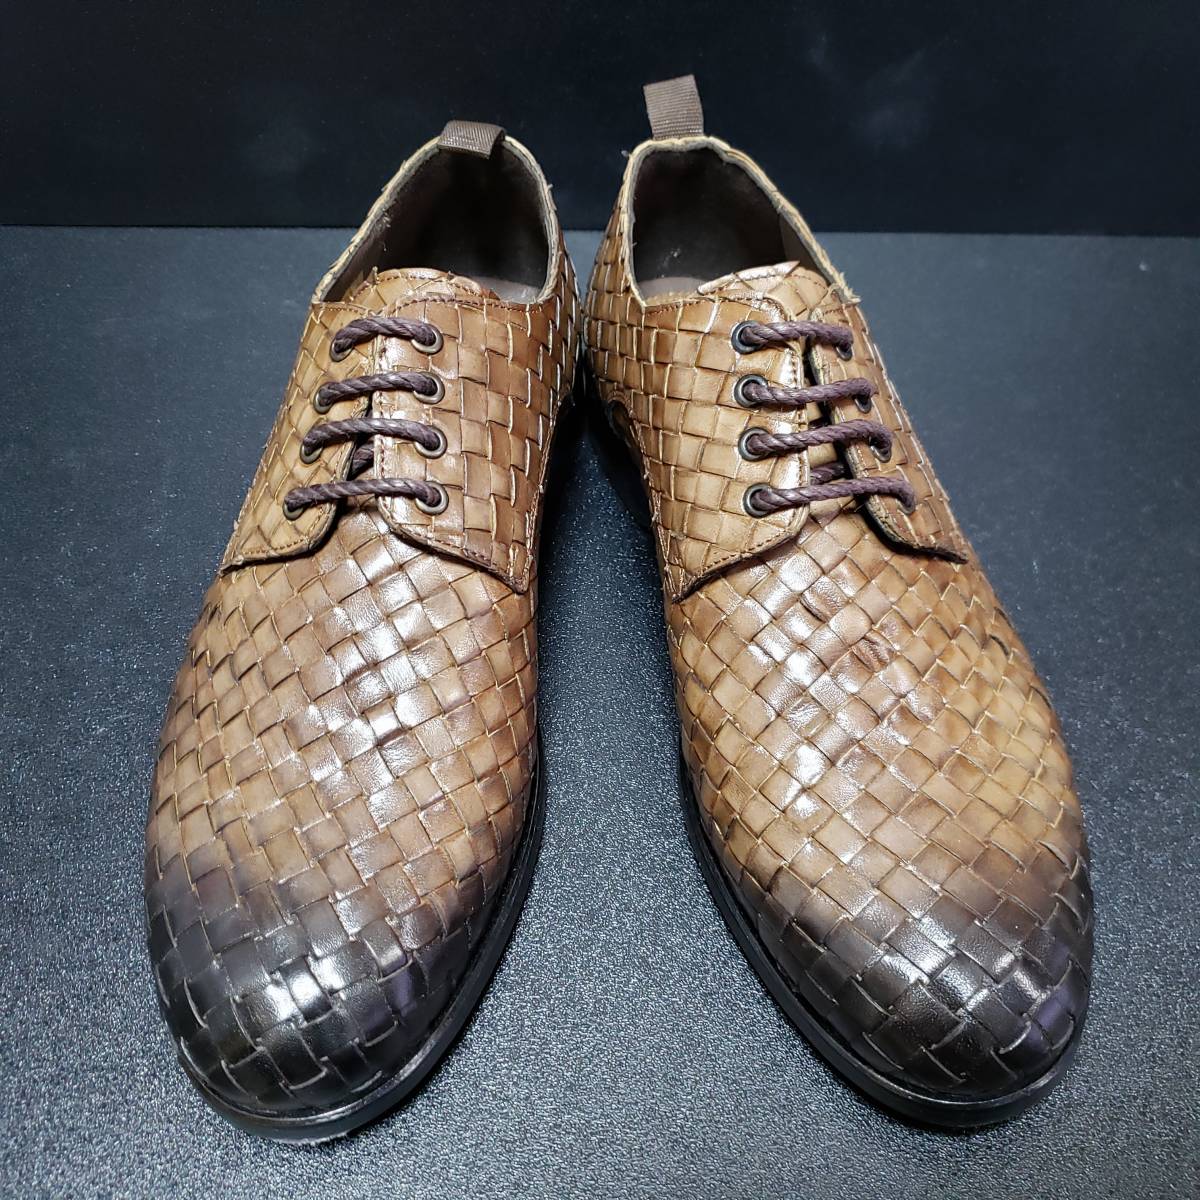 カルペディエムズィルト(Carpe diem sylt) イタリア製革靴 40_画像1